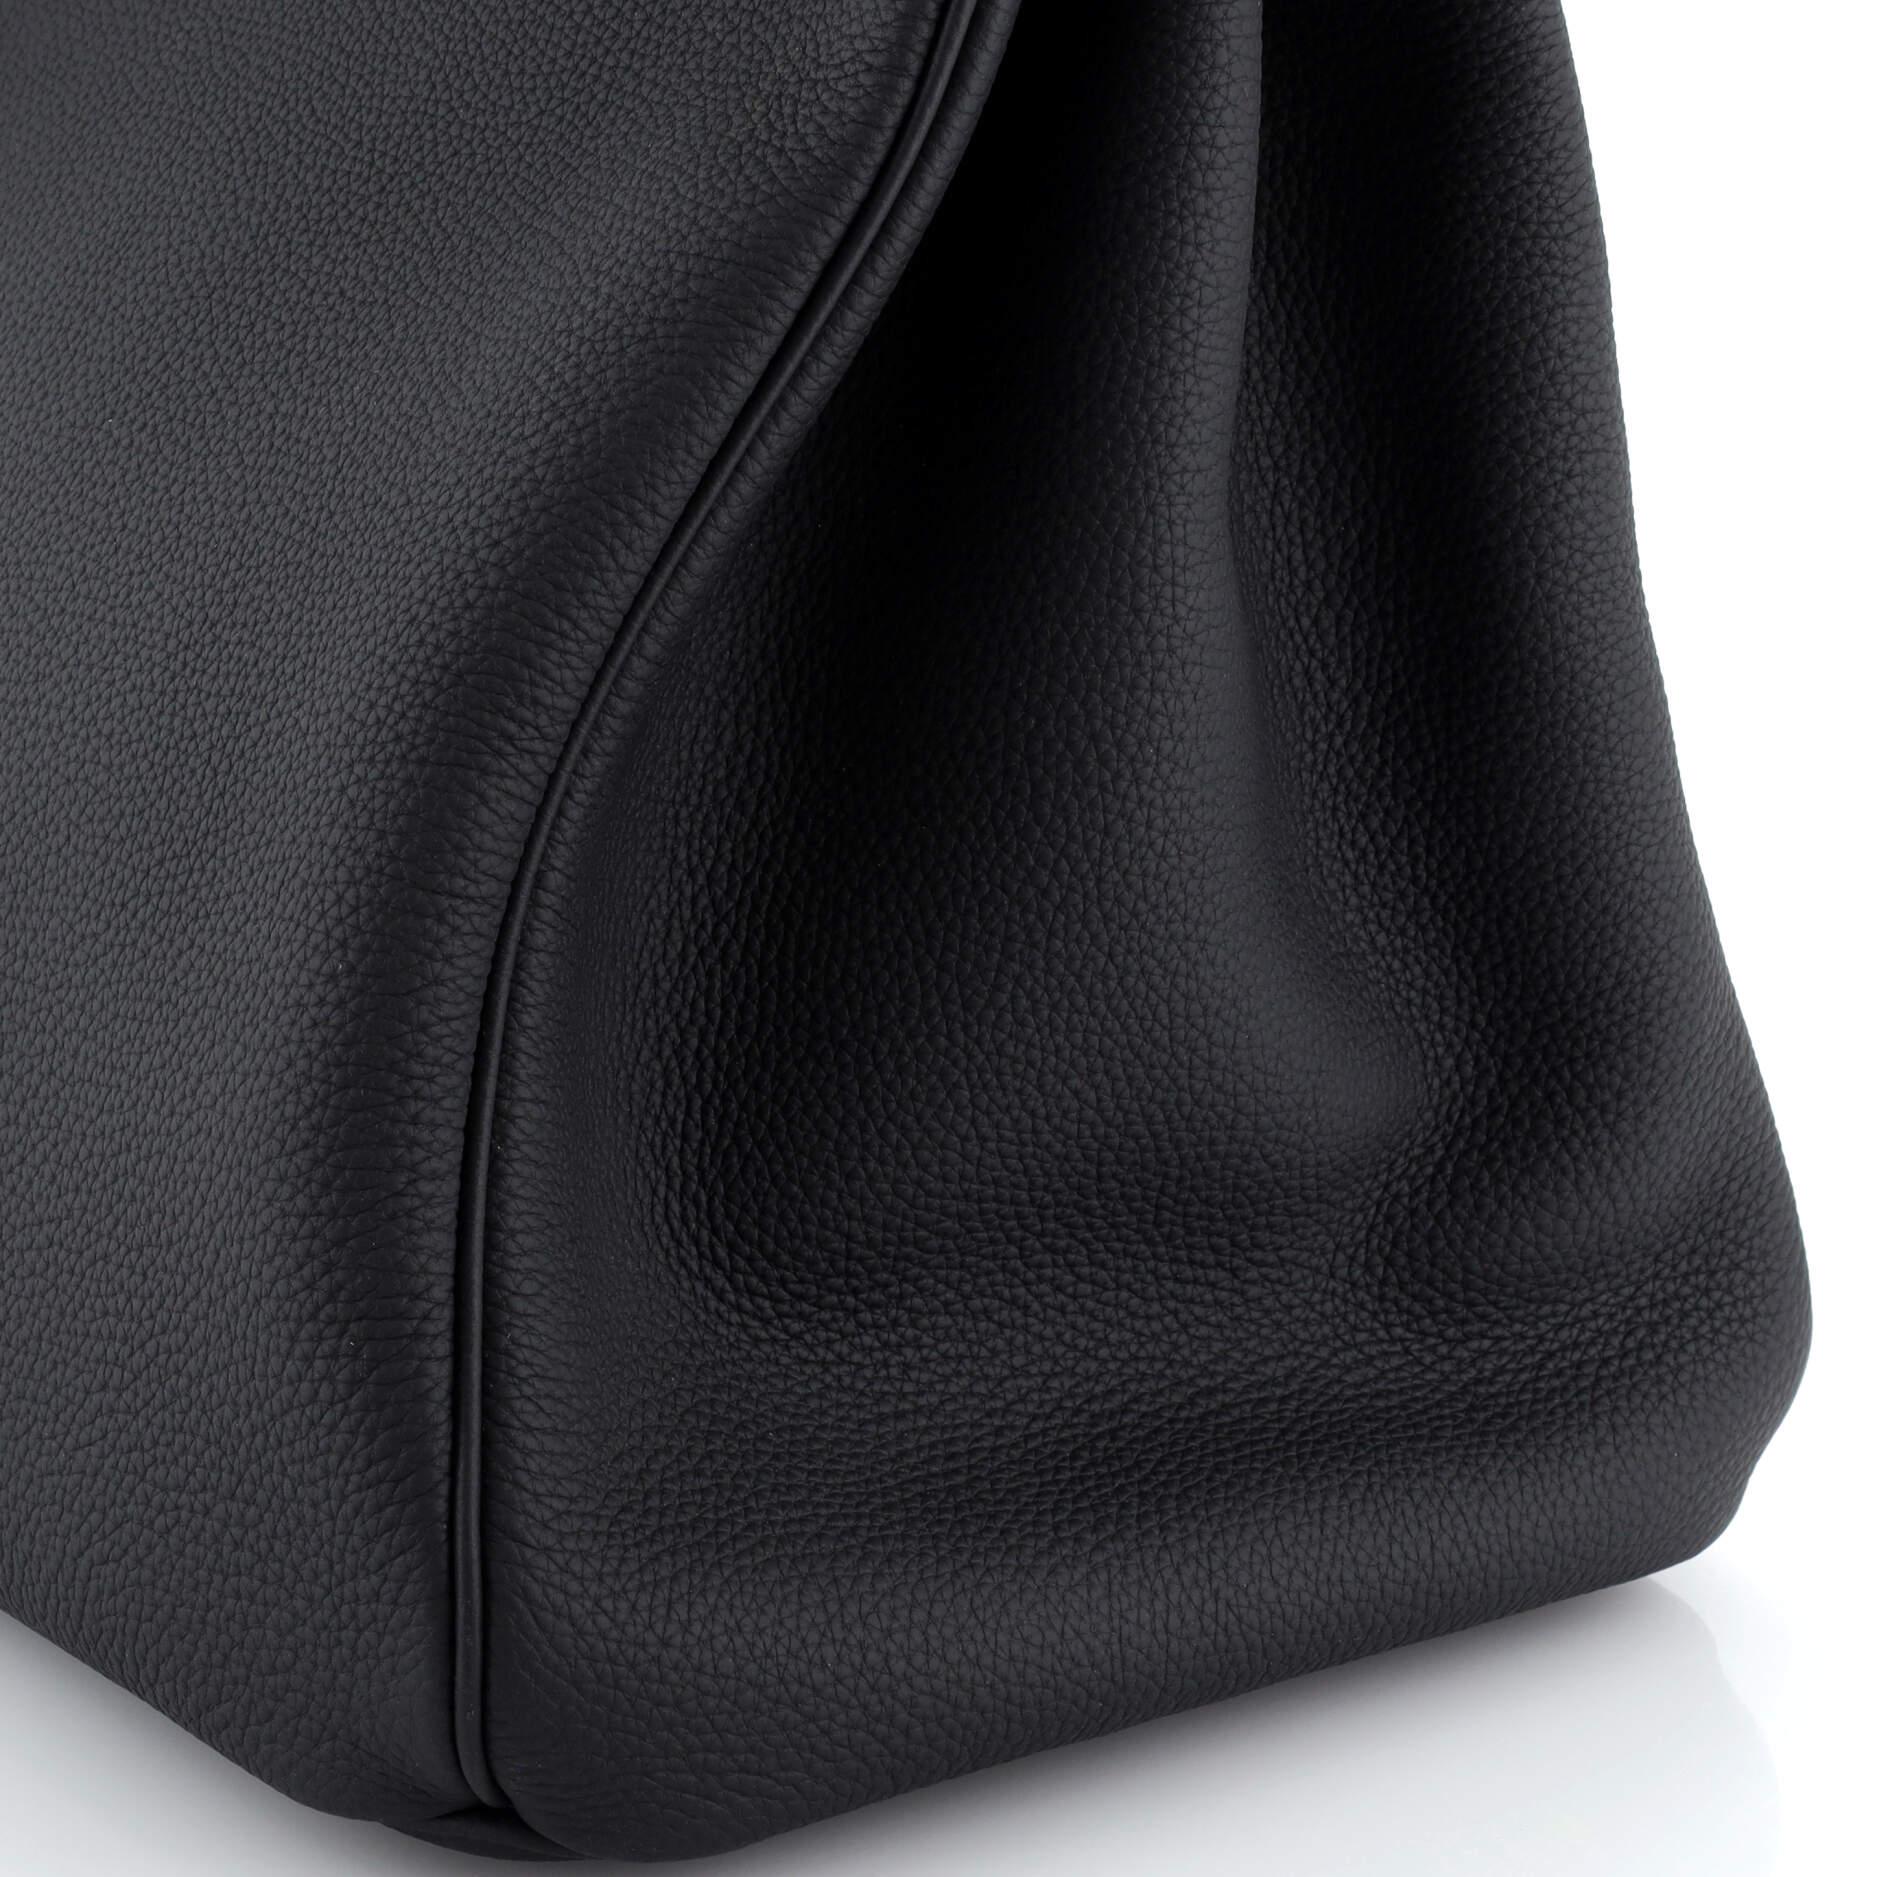 Hermes HAC Birkin Bag Noir Togo with Palladium Hardware 40 3